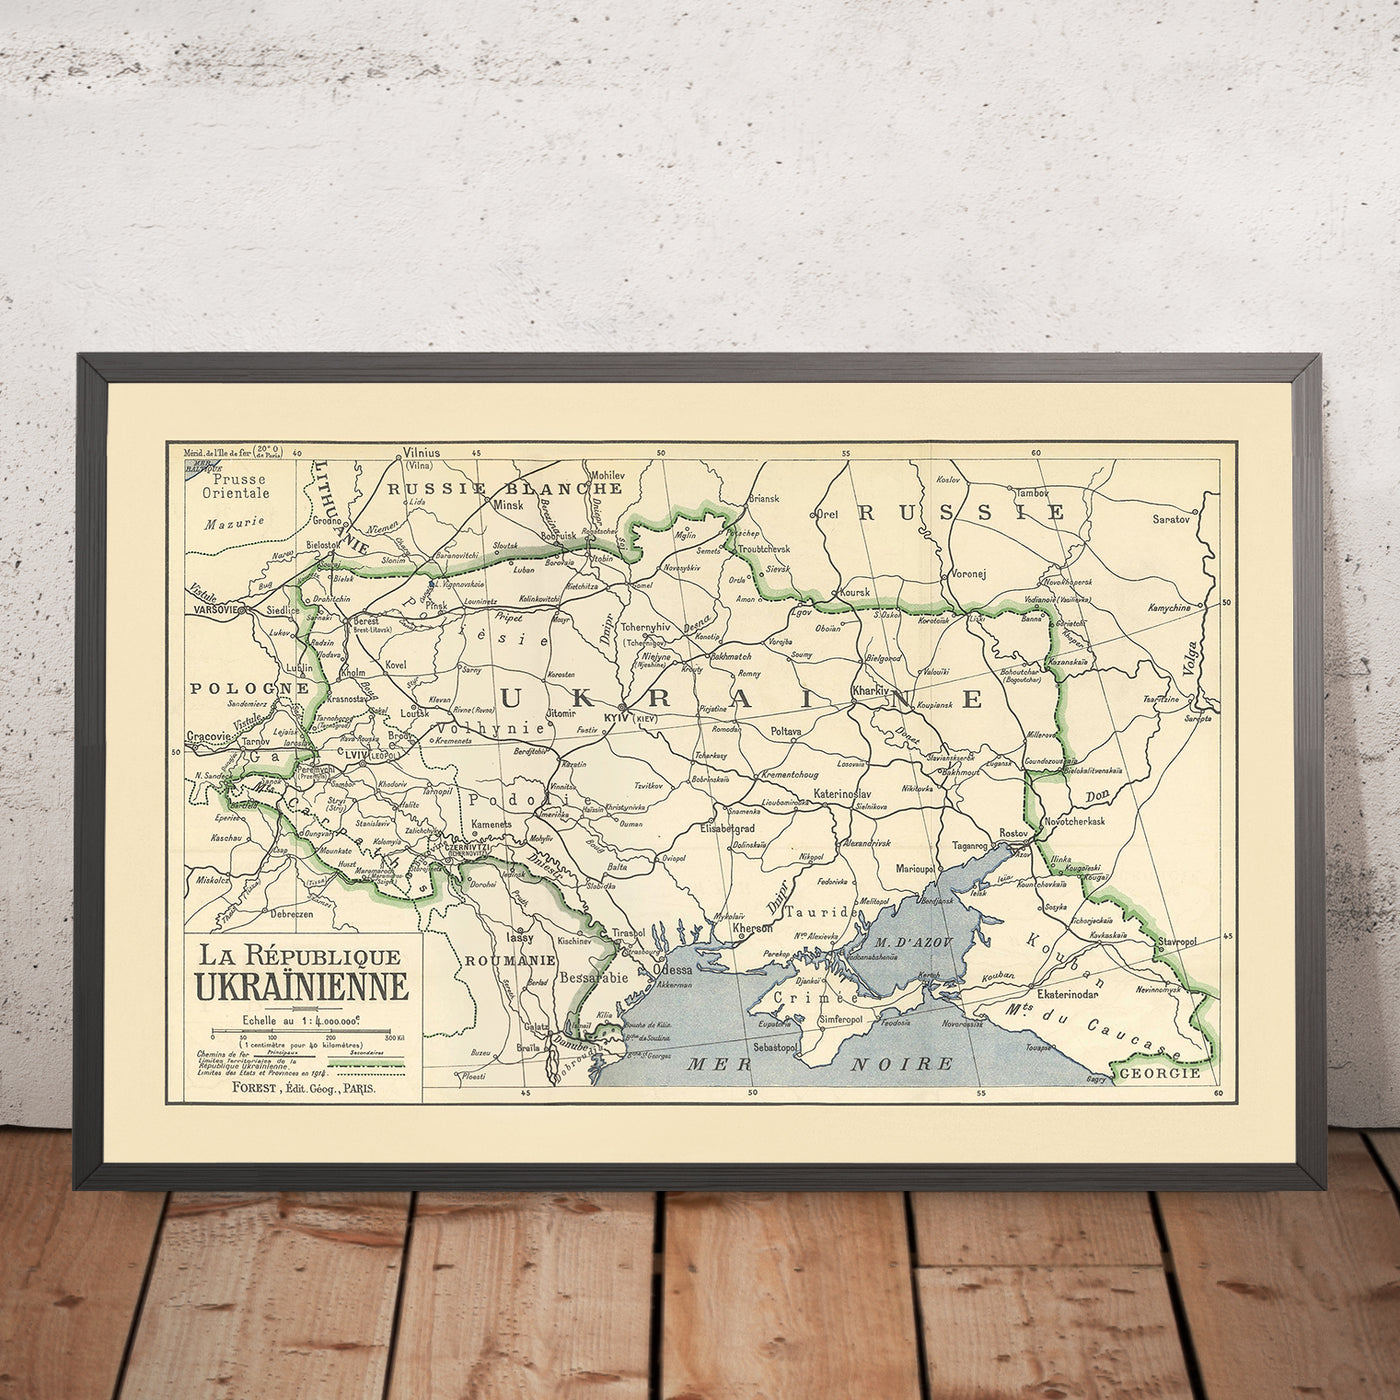 Alte politische Karte der Ukraine, 1919: Kiew, Dnjepr, Schwarzes Meer, Karpaten, Halbinsel Krim